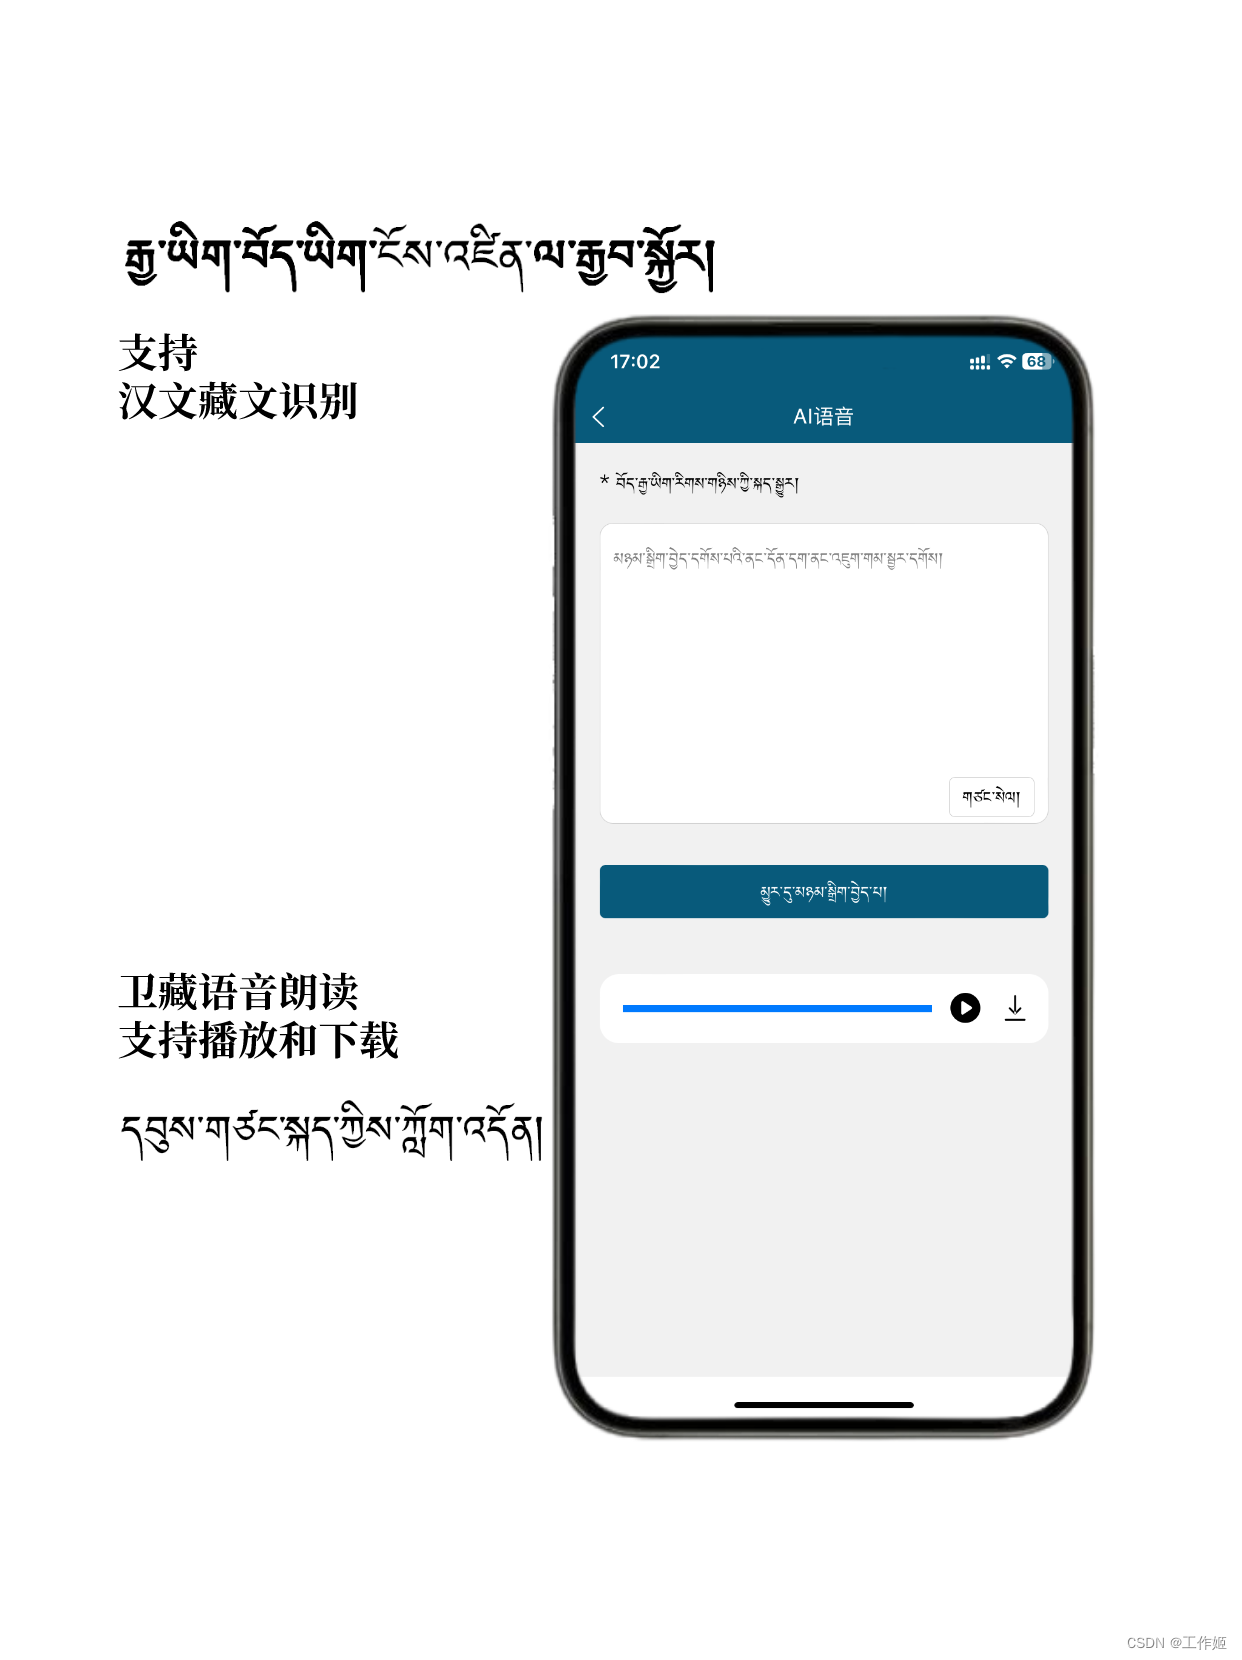 藏汉翻译通App：一款可以让你在西藏横着走的藏语翻译工具，卫藏语、安多语和康巴语全部都不在话下！